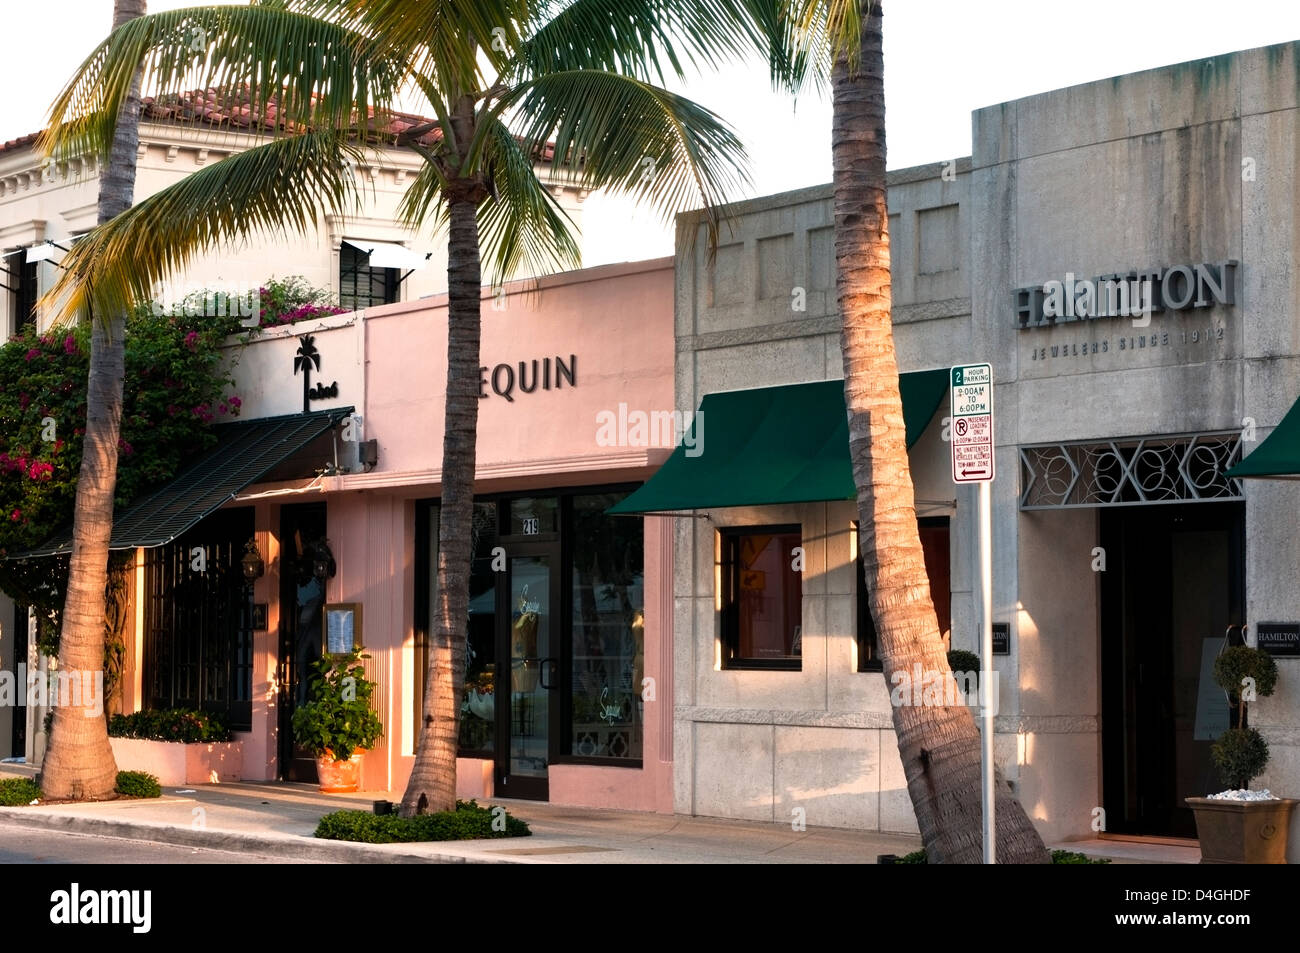 La rue bordée de palmiers, devantures de Worth Avenue, West Pam Beach Florida Banque D'Images